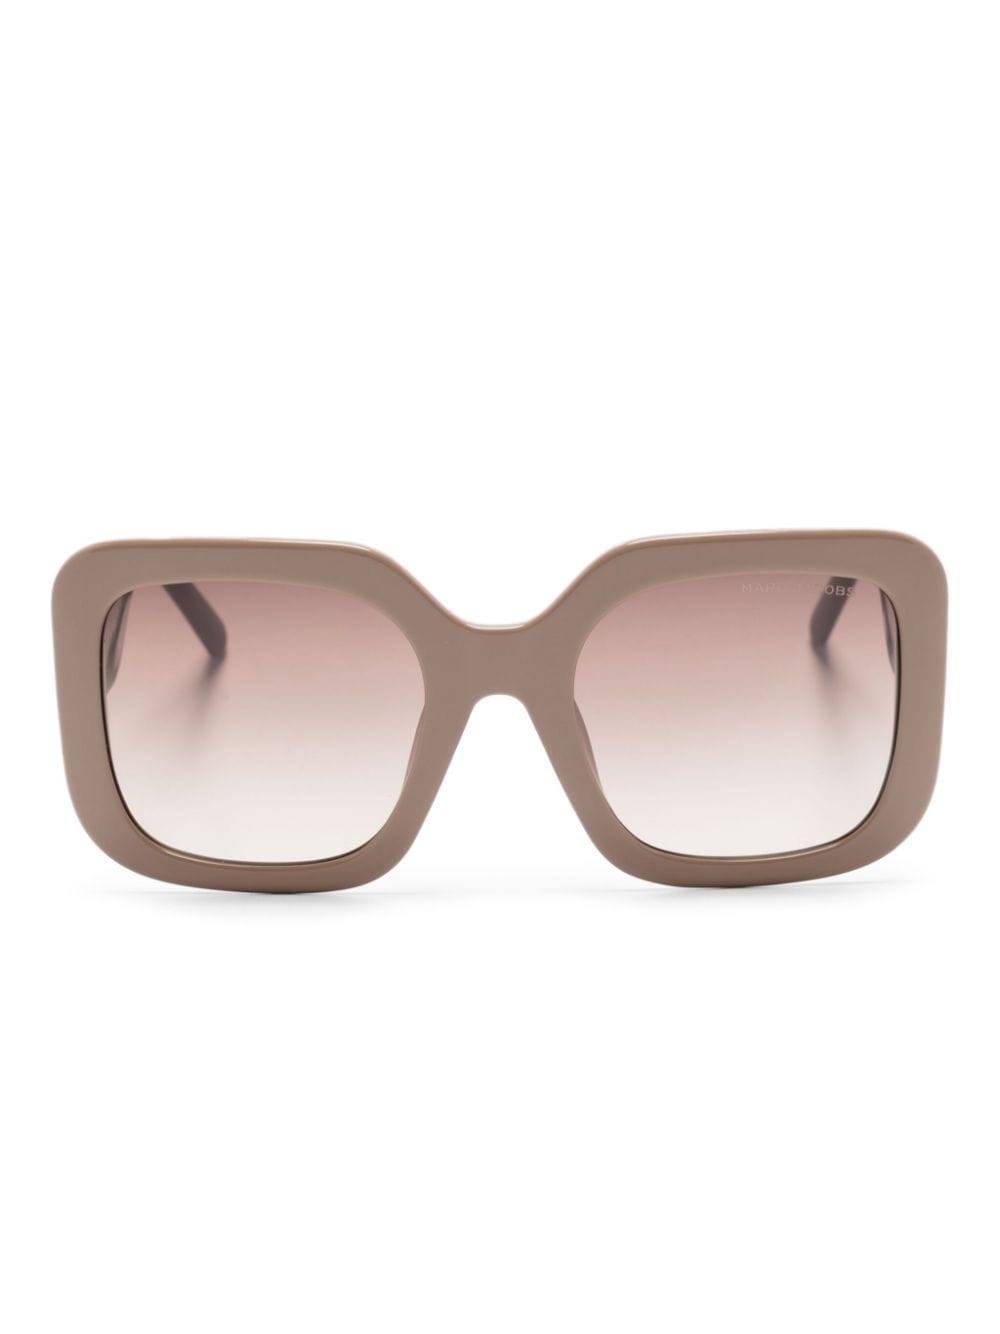 marc jacobs eyewear lunettes de soleil à monture oversize - tons neutres